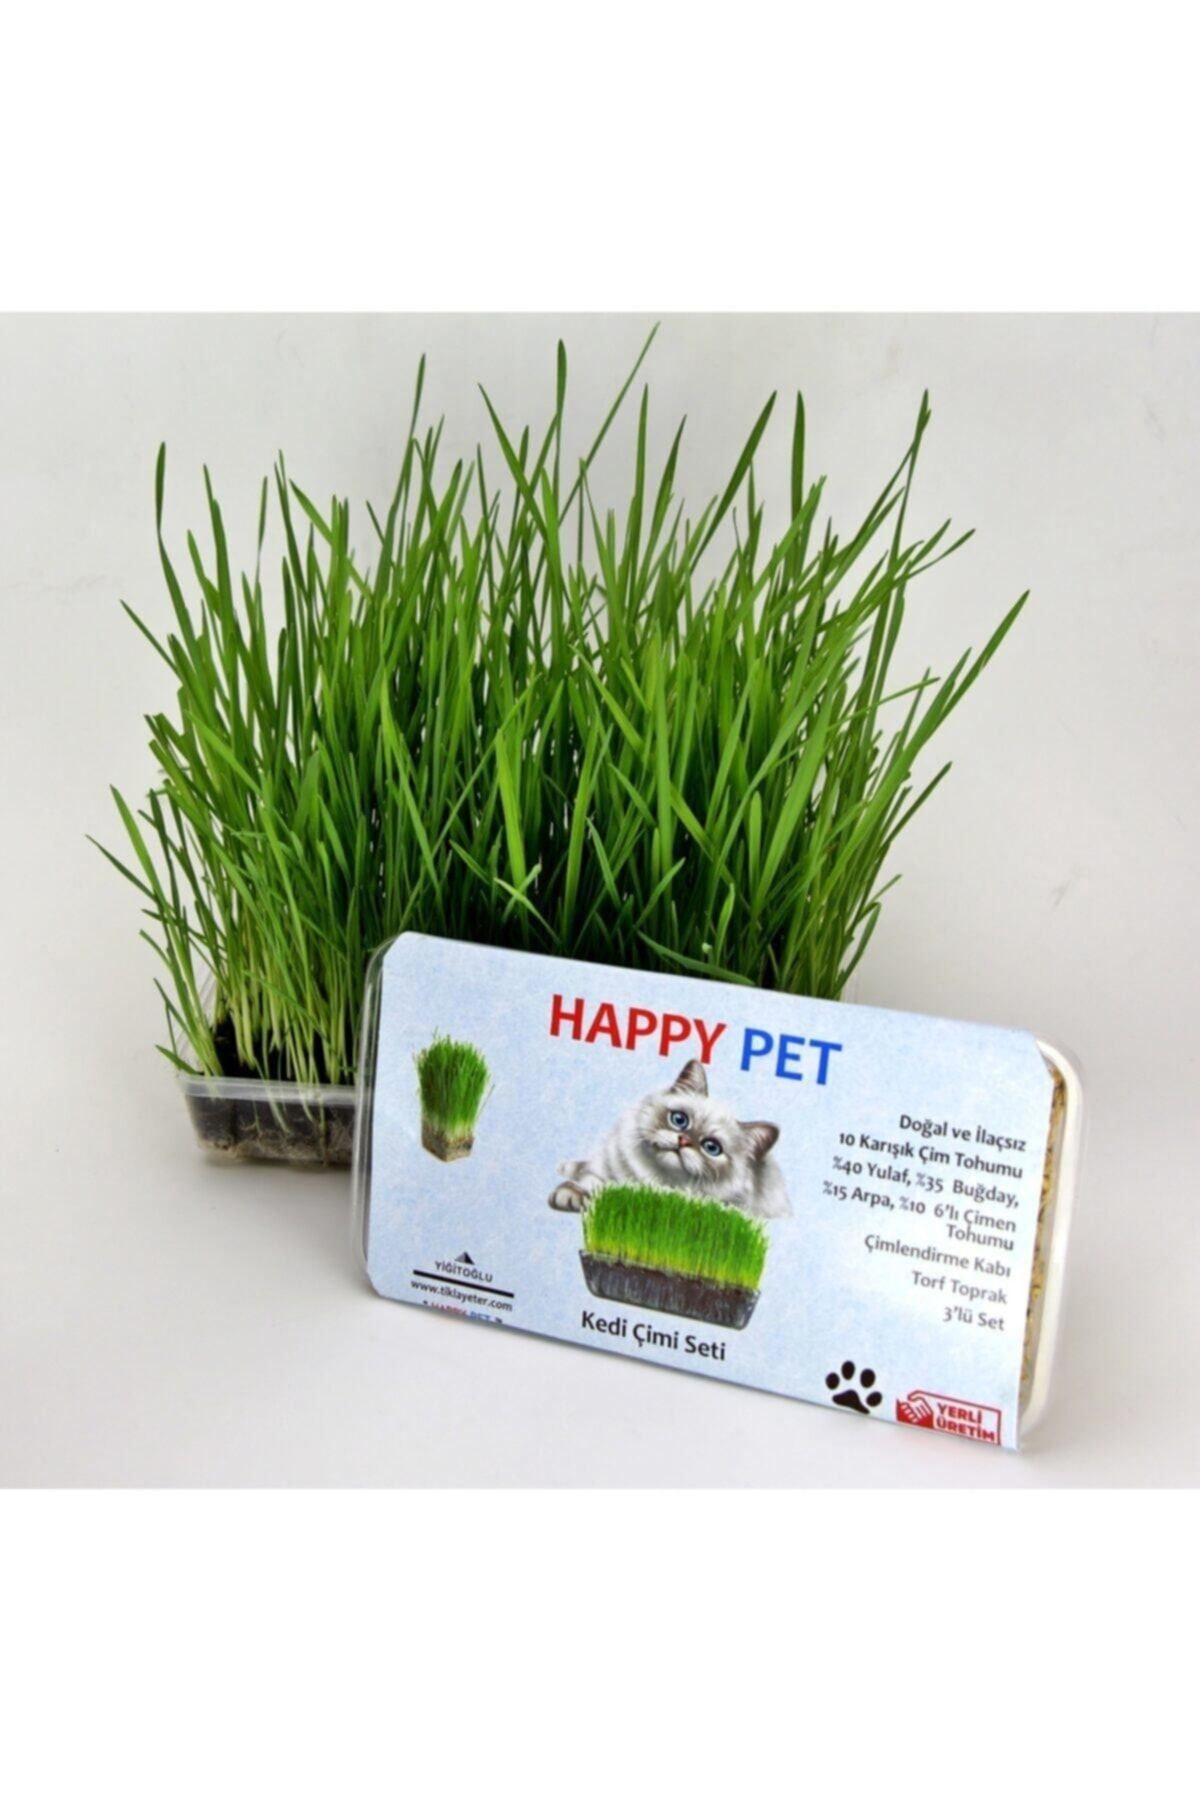 Happy Pet Huzurlu Kedi Otu Çimi Köpek Tavşan Hamster Ilaçsız Karışık Doğal Vitamin Mineral Gıda Takviyesi